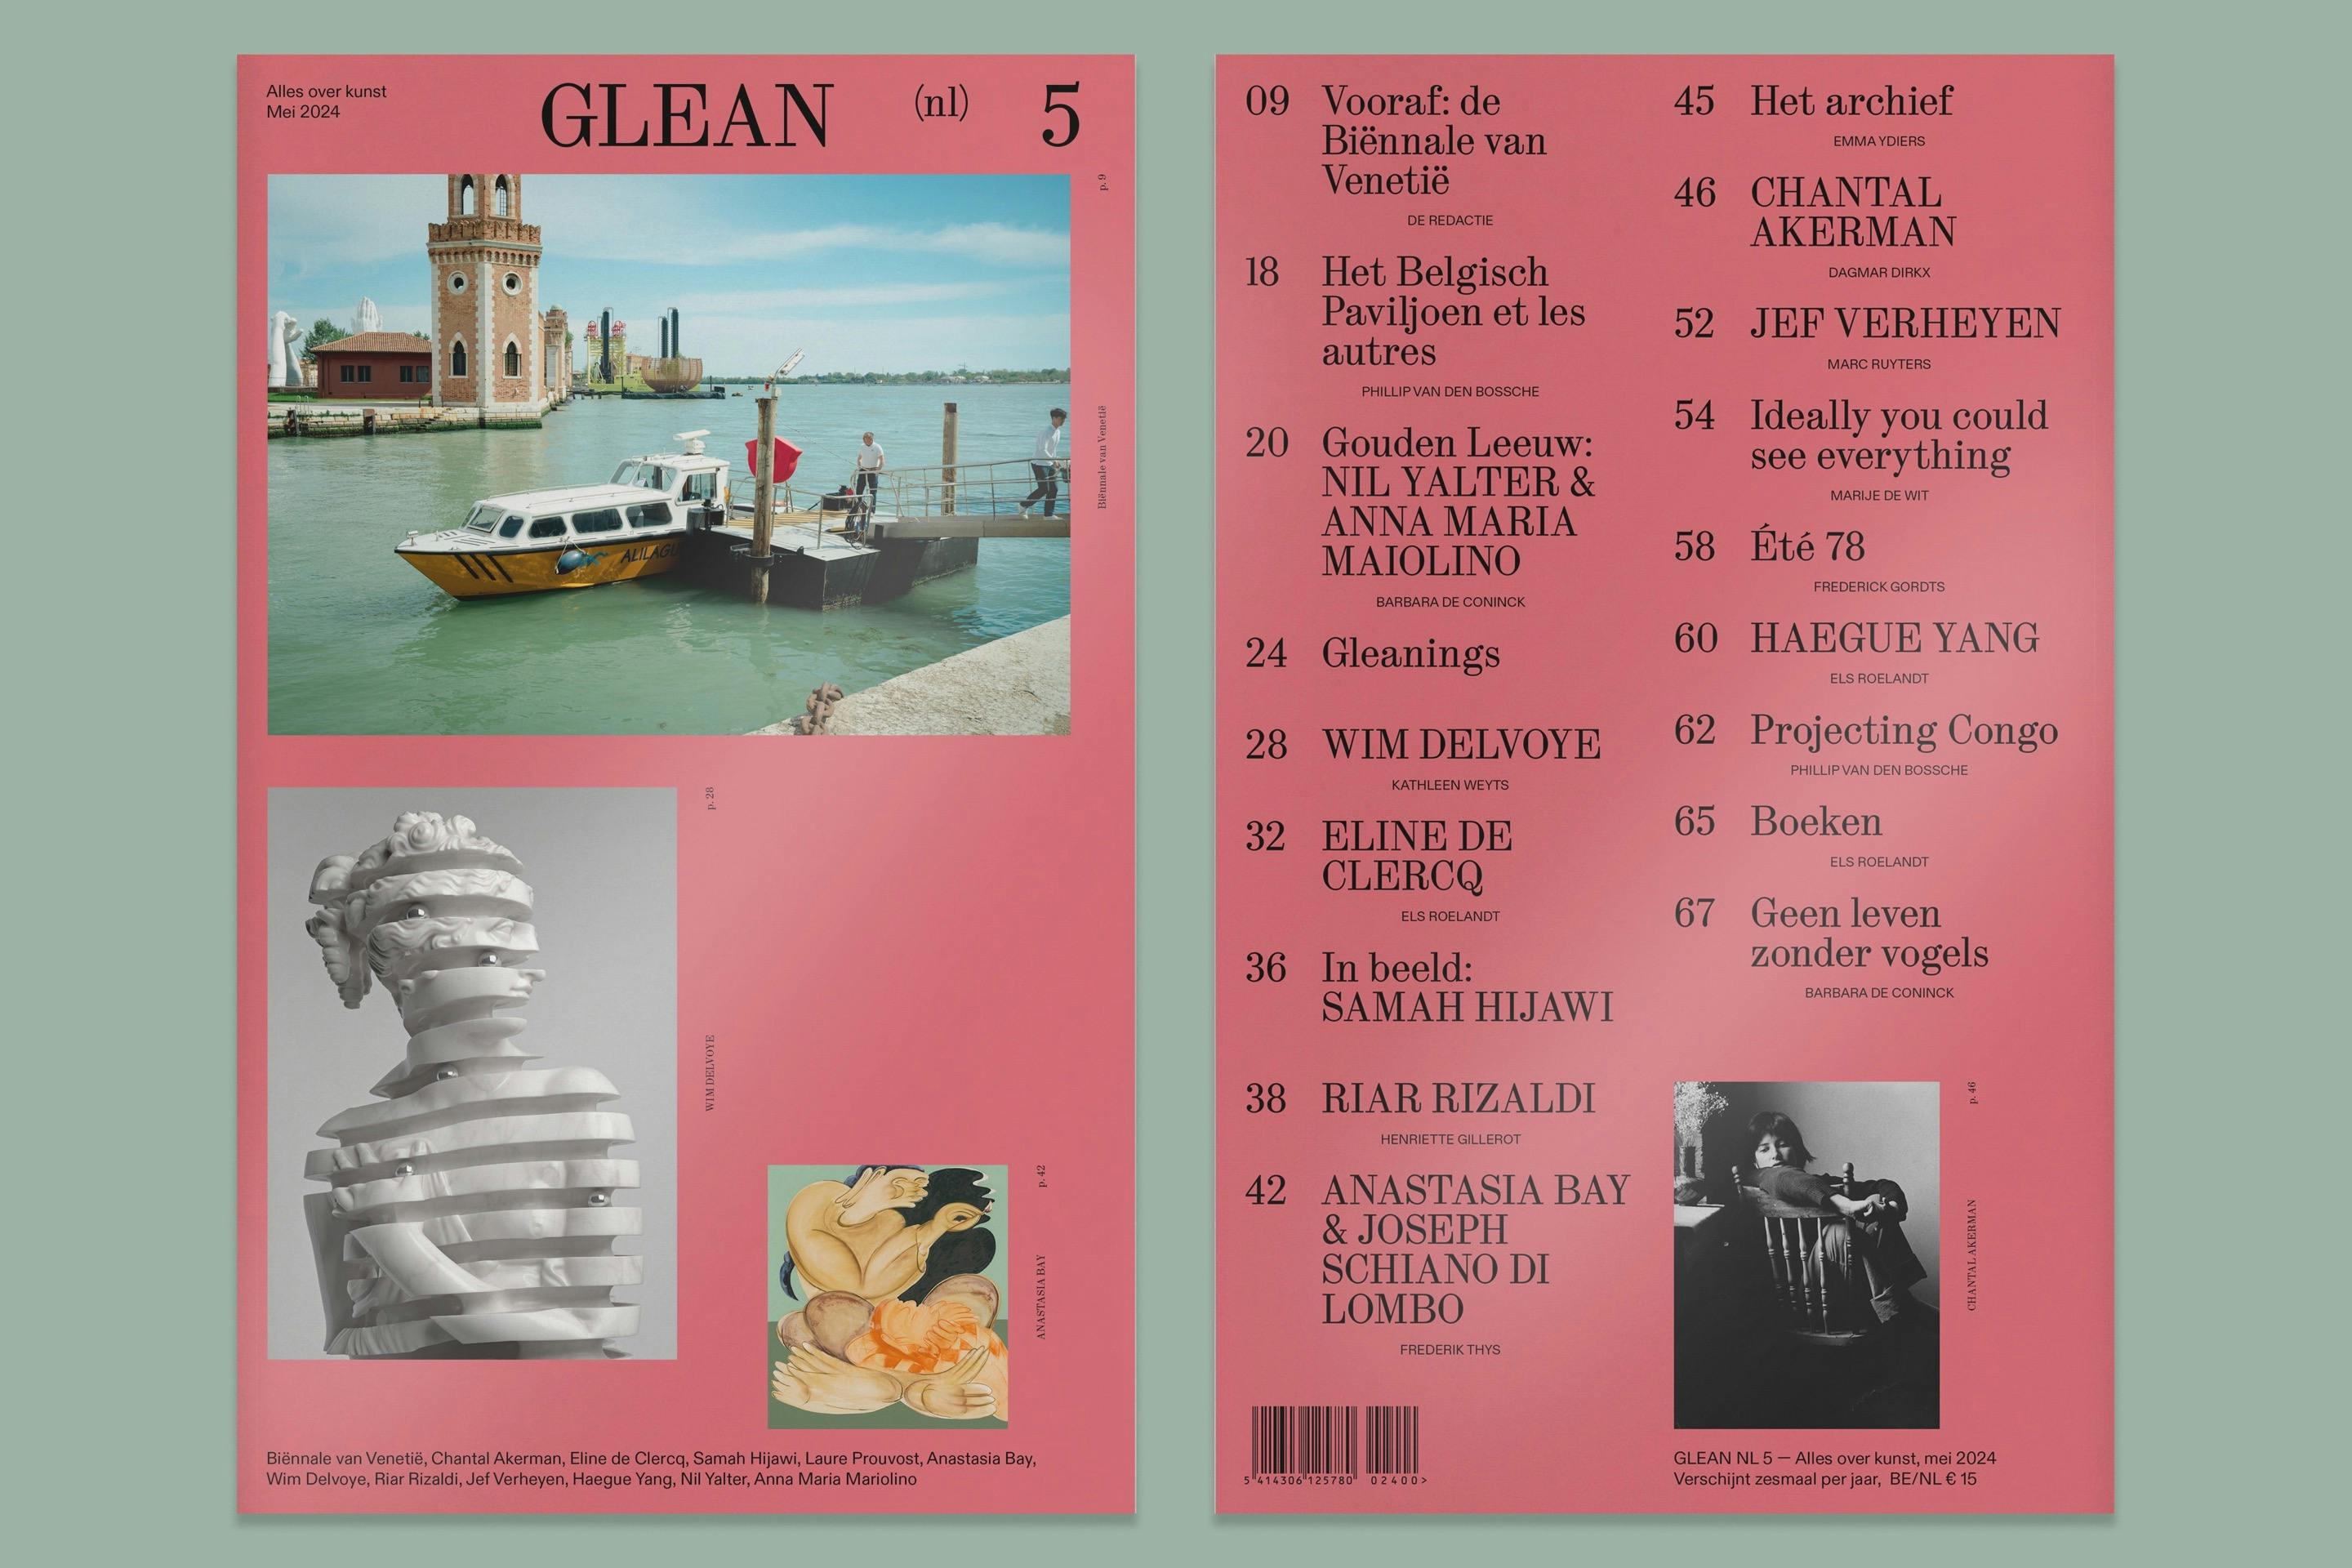 GLEAN NL 5 spread